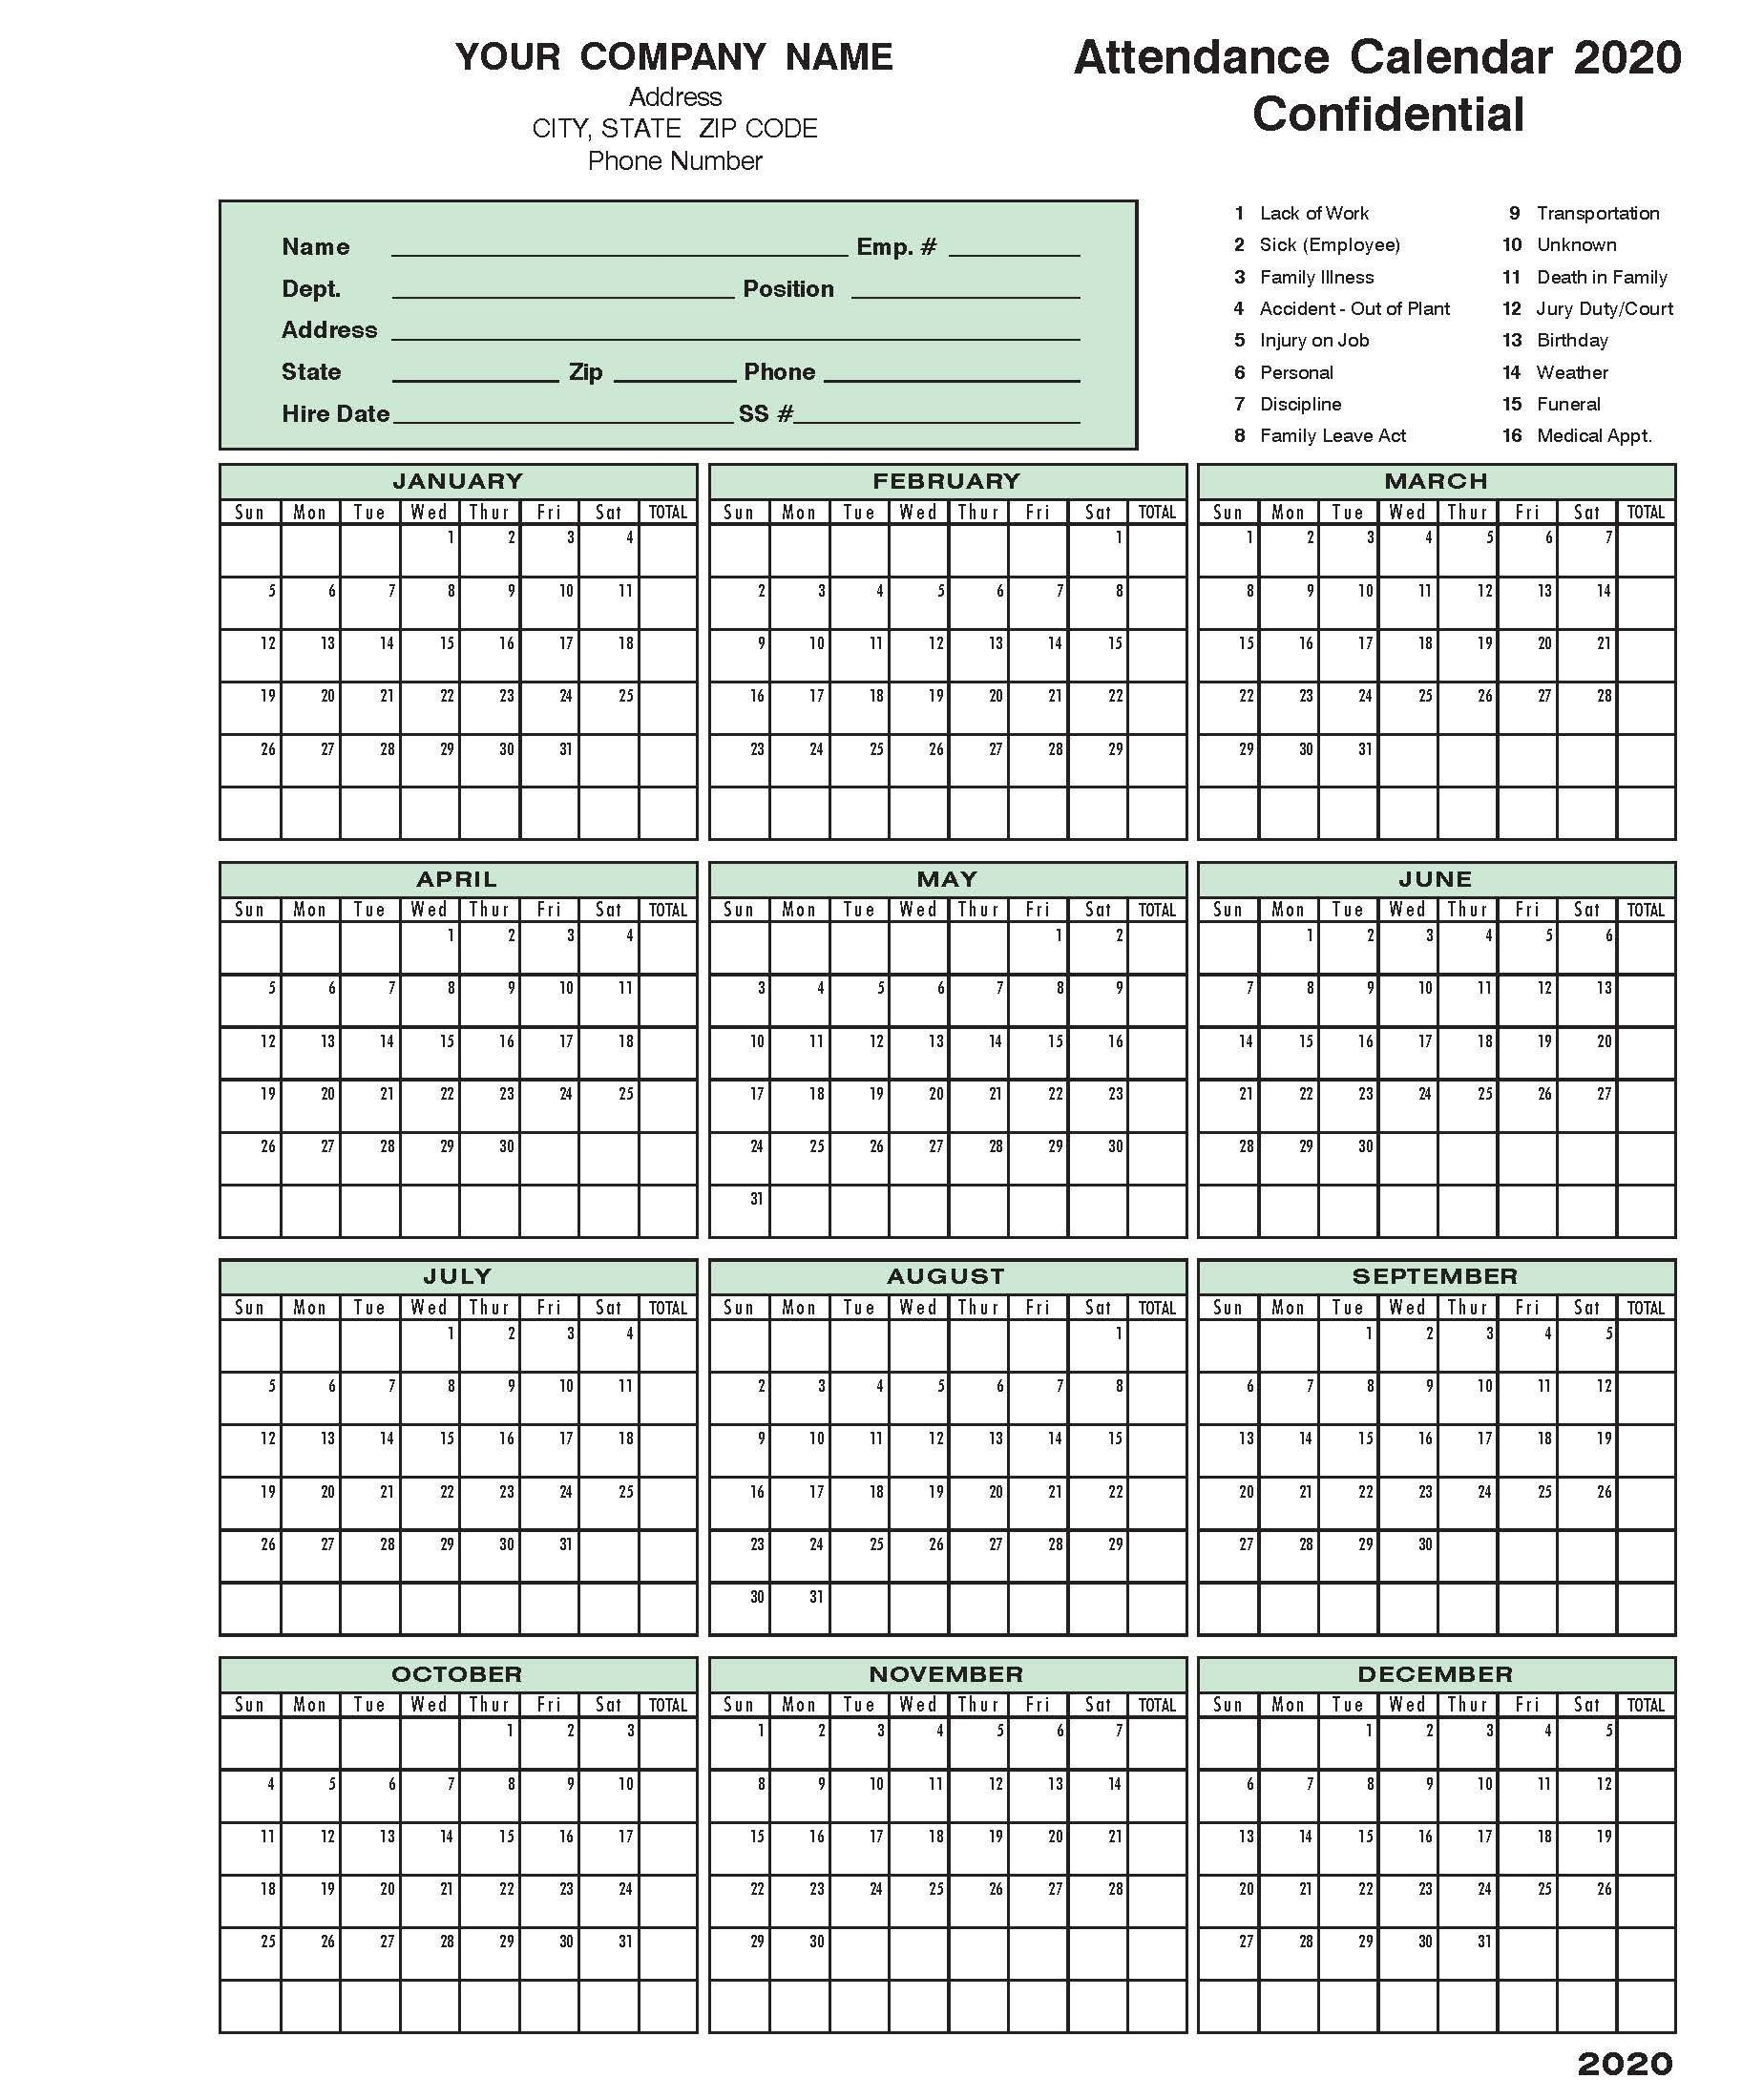 2020 Attendance Calendar | Calendar Template, Calendar 2020-Free Printable Attendance Calendar 2021